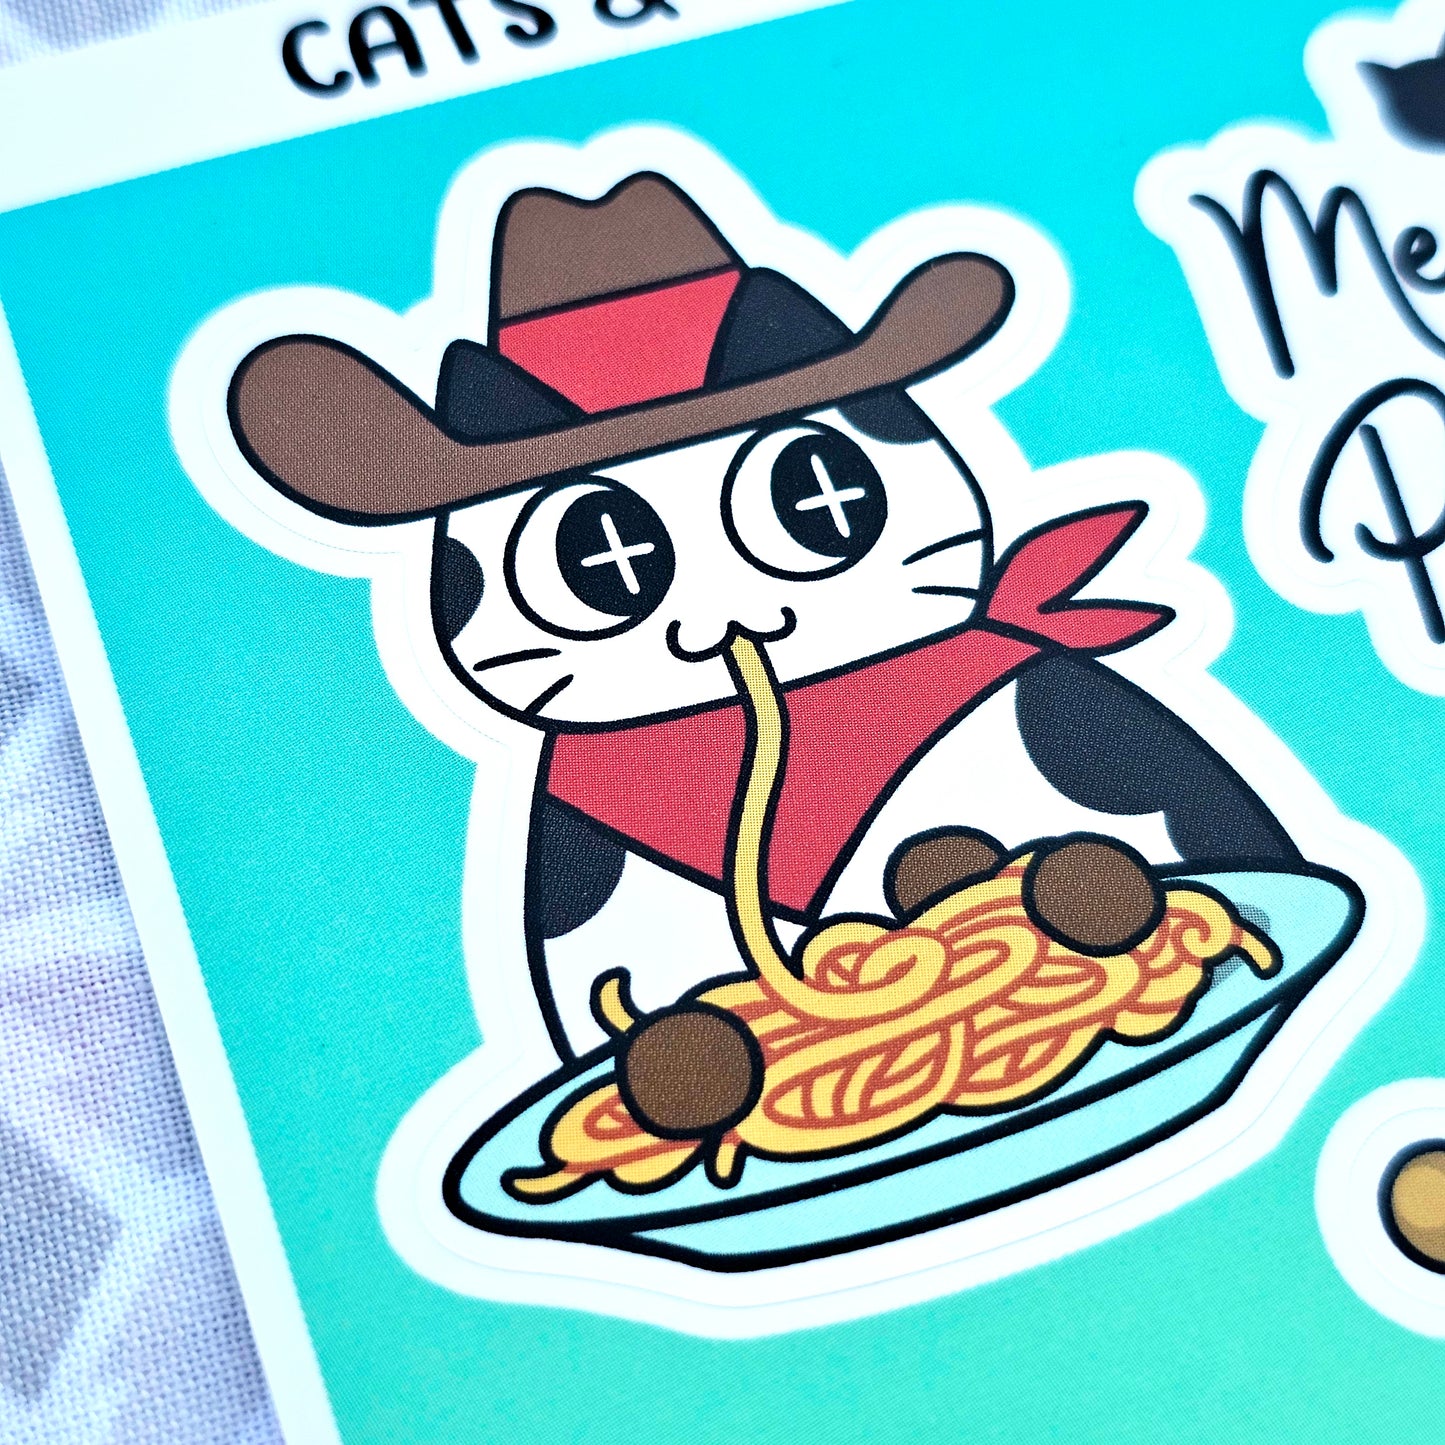 "Meowdy!" Sticker Sheet